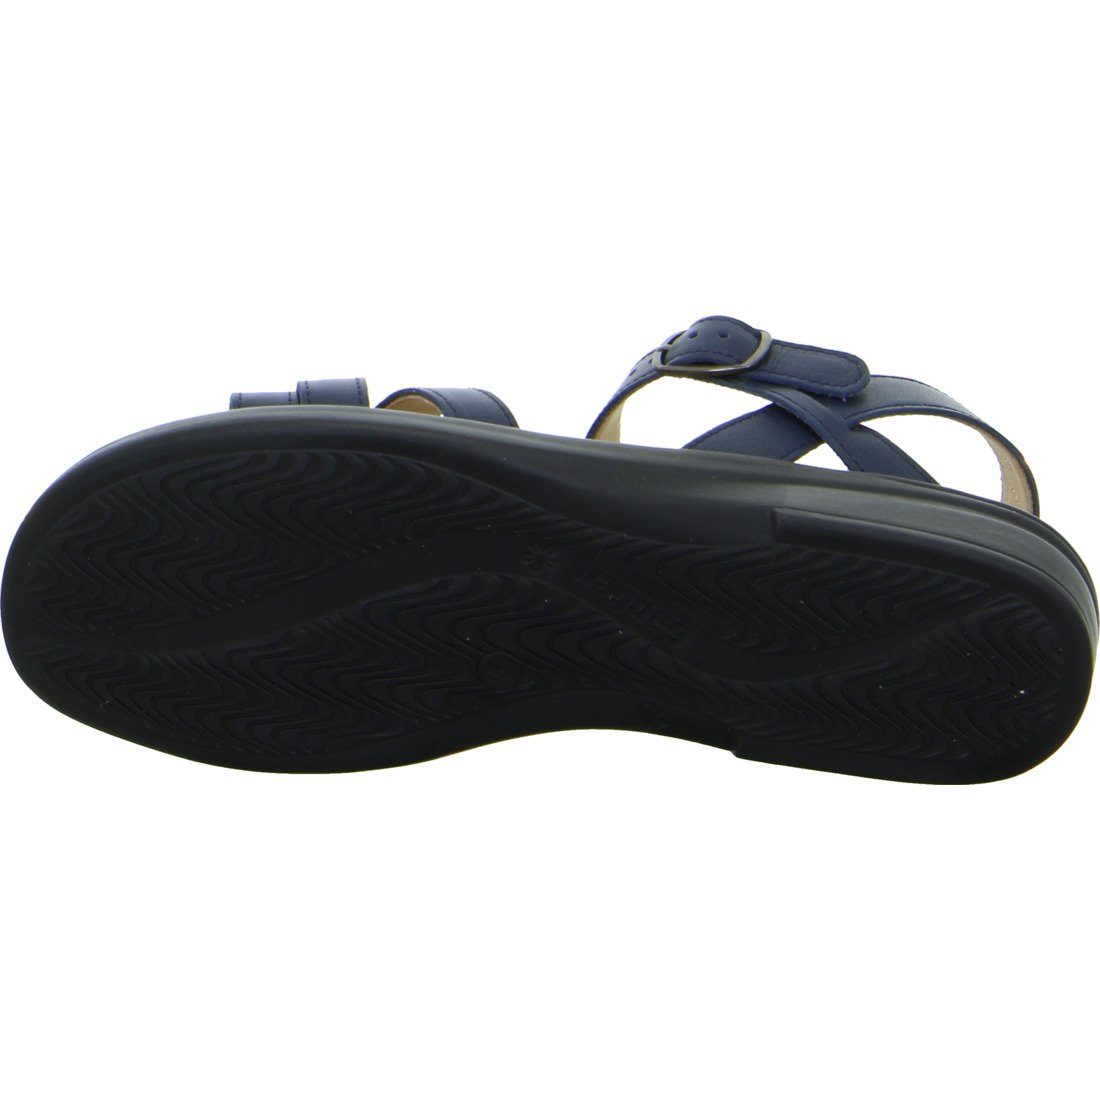 Ganter Ganter Sandalette Sandalette blau Schuhe, Sonnica - 048926 Glattleder